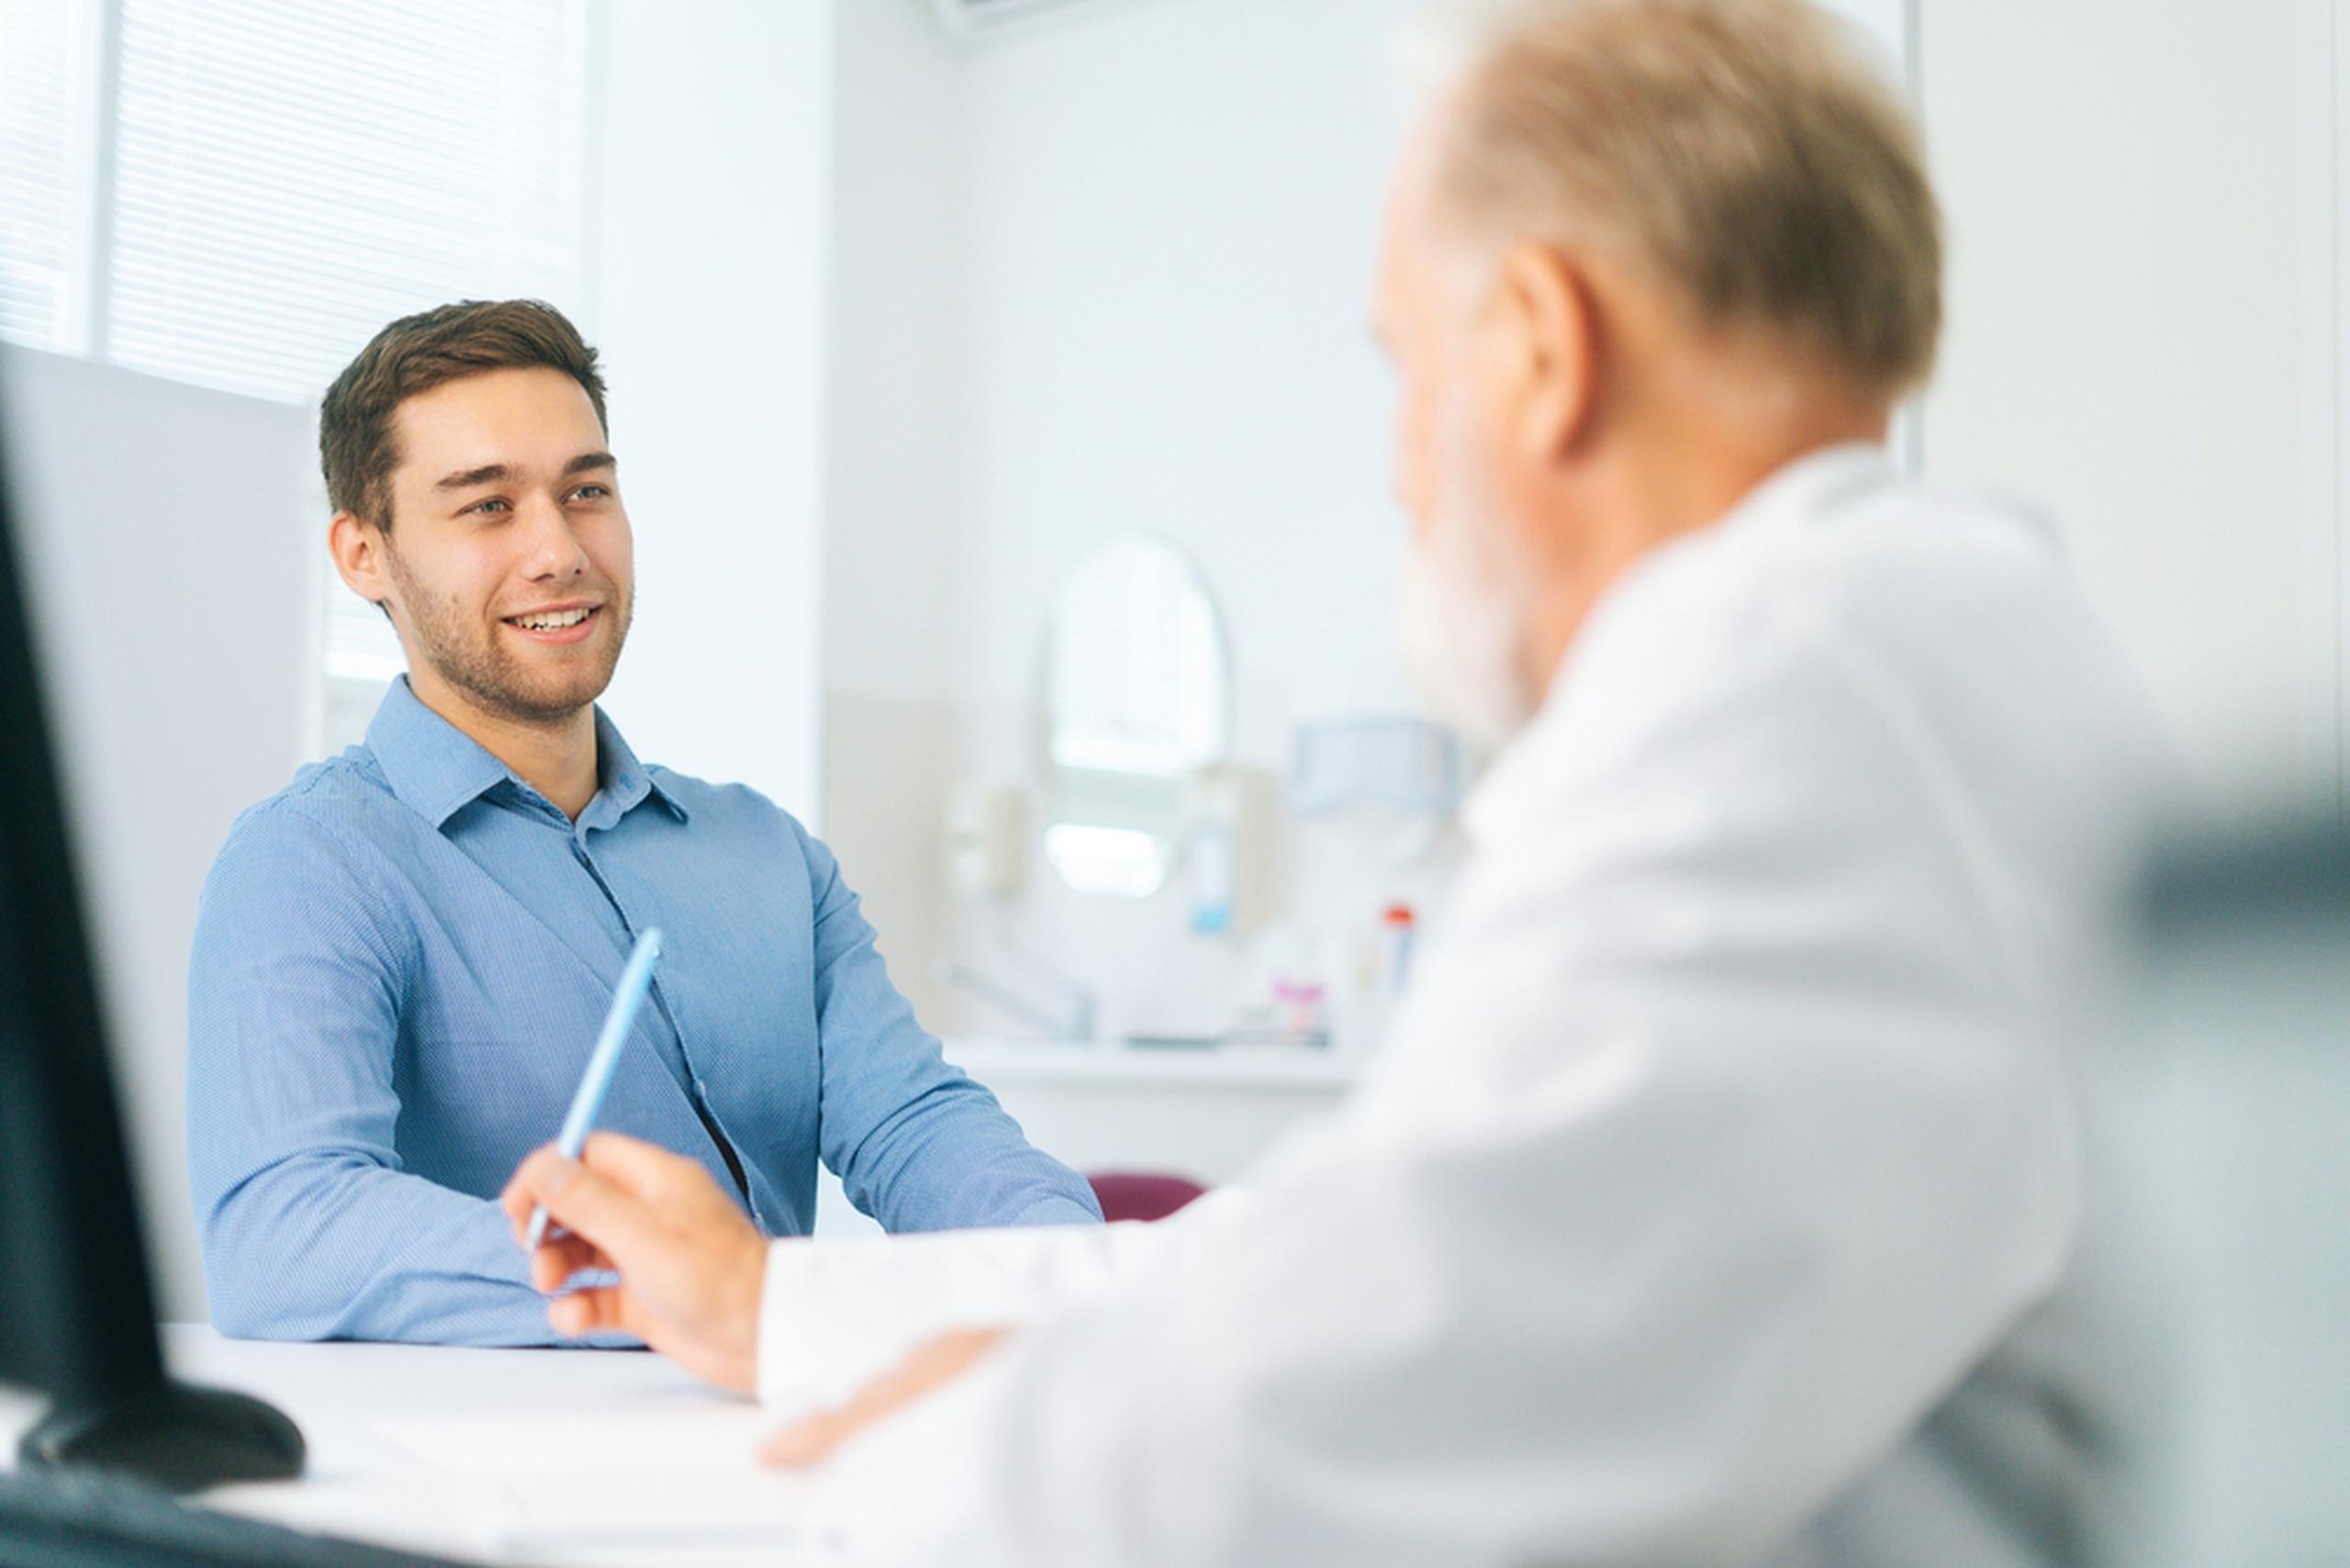 Prepararte para la consulta médica puede facilitar el diagnóstico de la psoriasis.